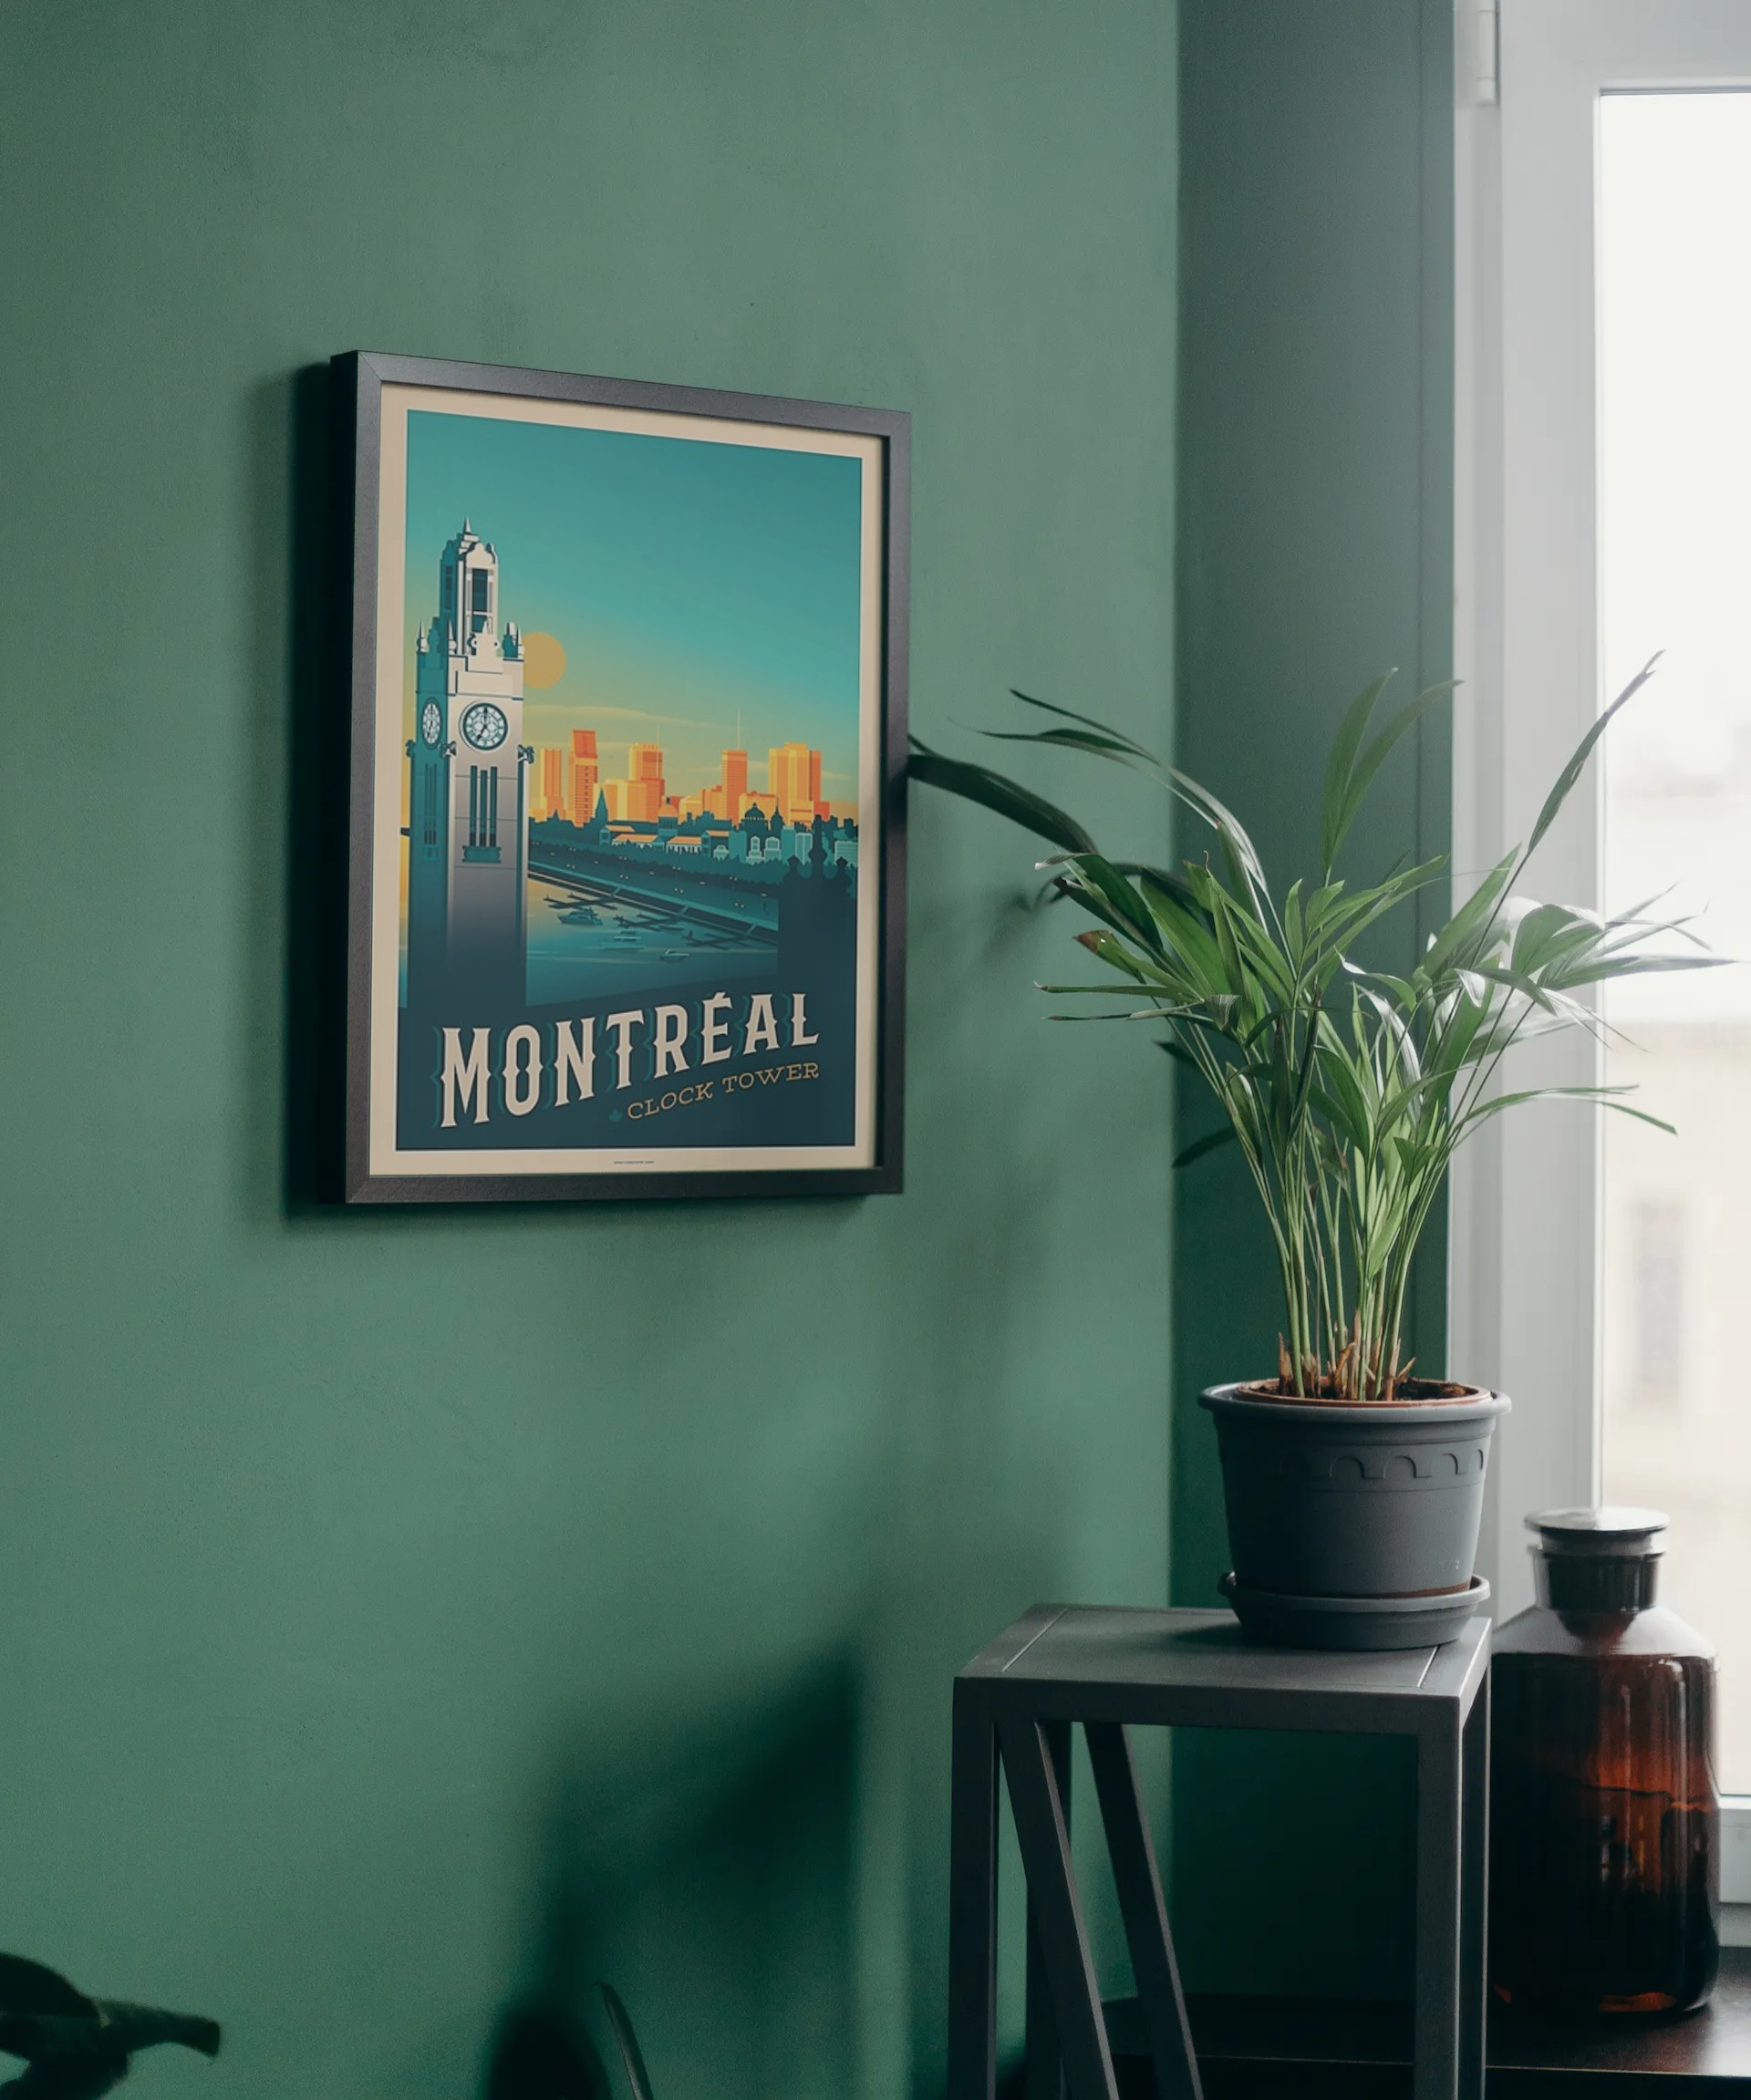 Vintage Montreal Clocktower Travel Art Painting